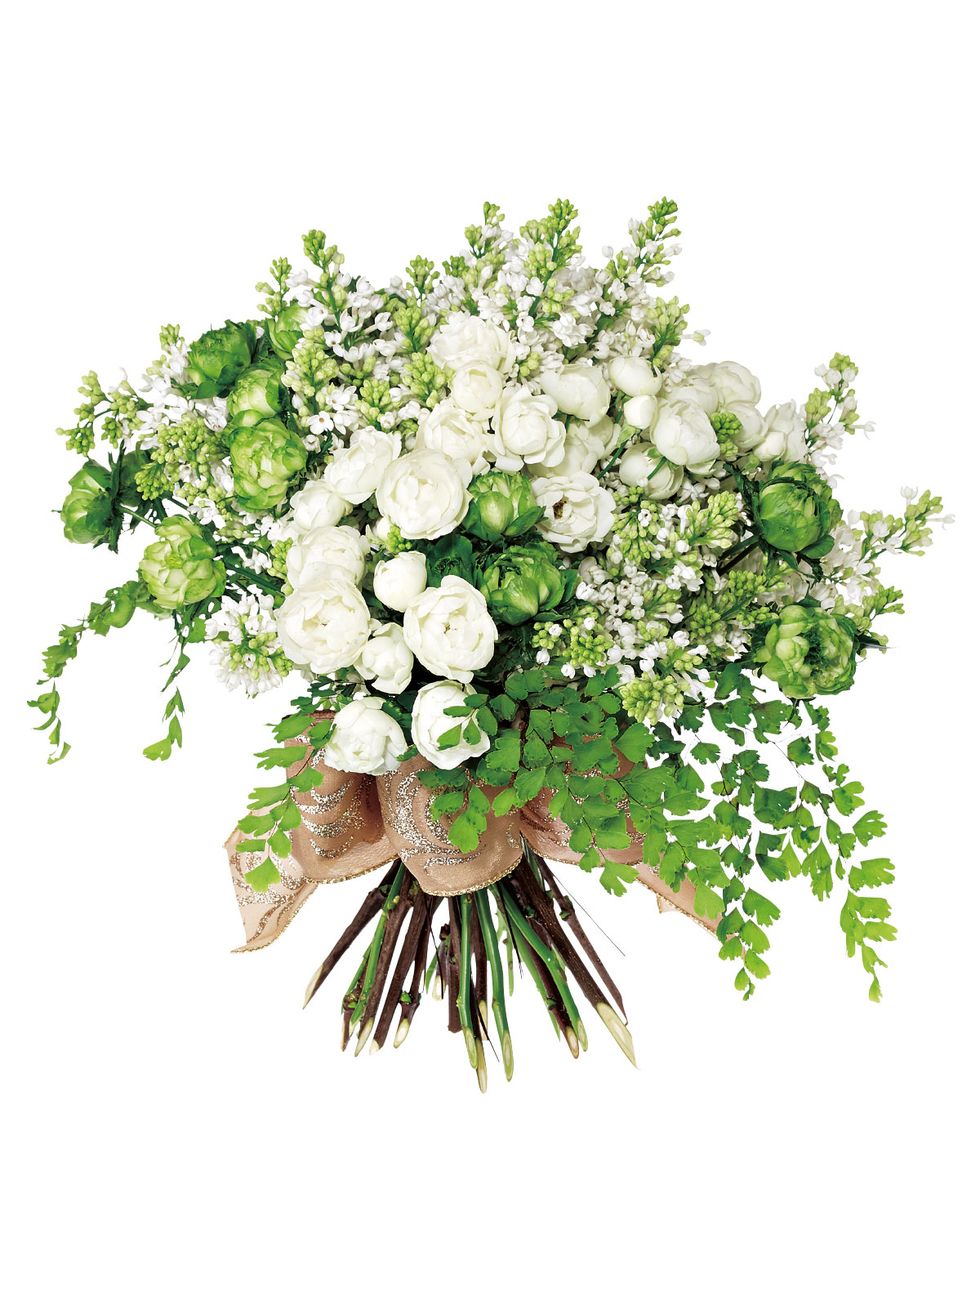 Bouquet, Petal, Flower, Cut flowers, Botany, Flower Arranging, Floristry, Flowering plant, Floral design, Artificial flower, 